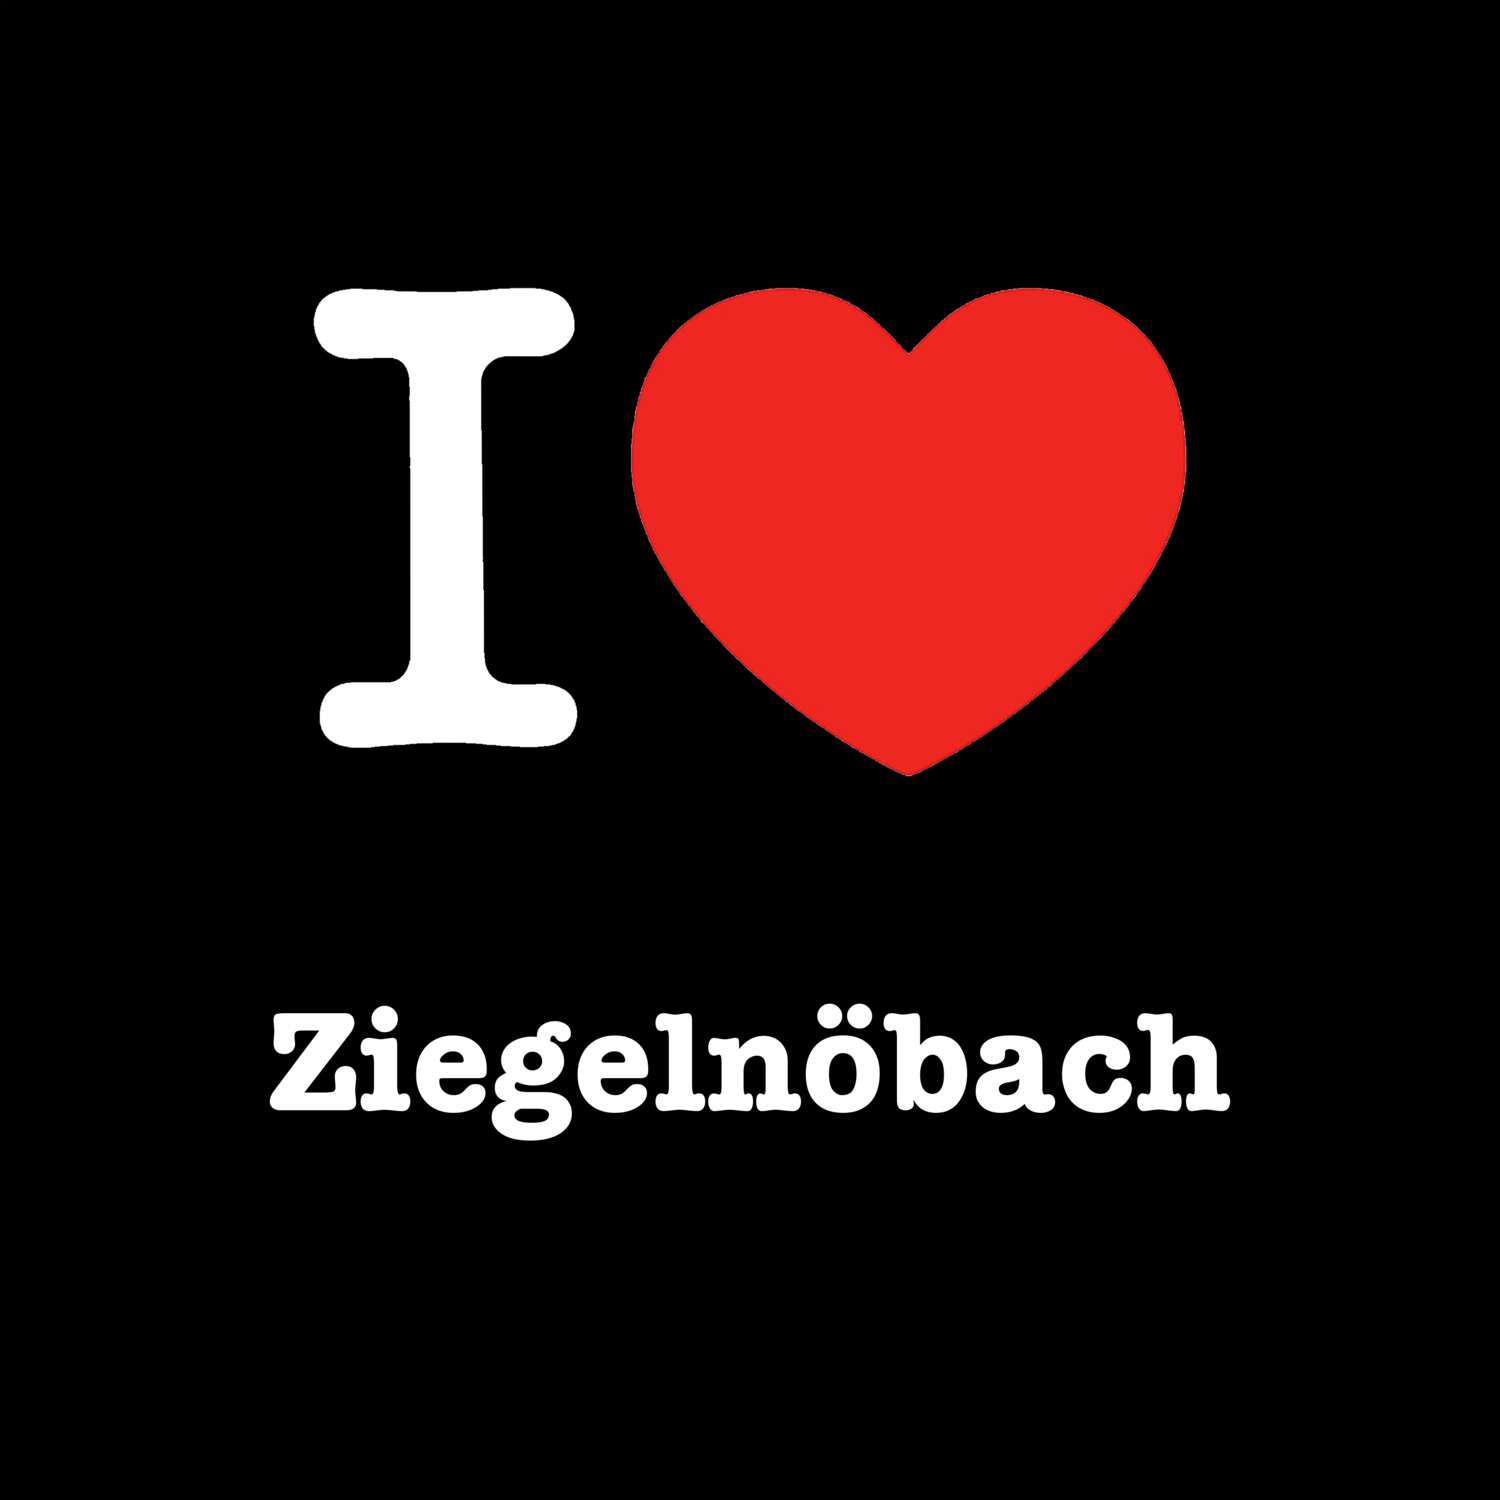 Ziegelnöbach T-Shirt »I love«